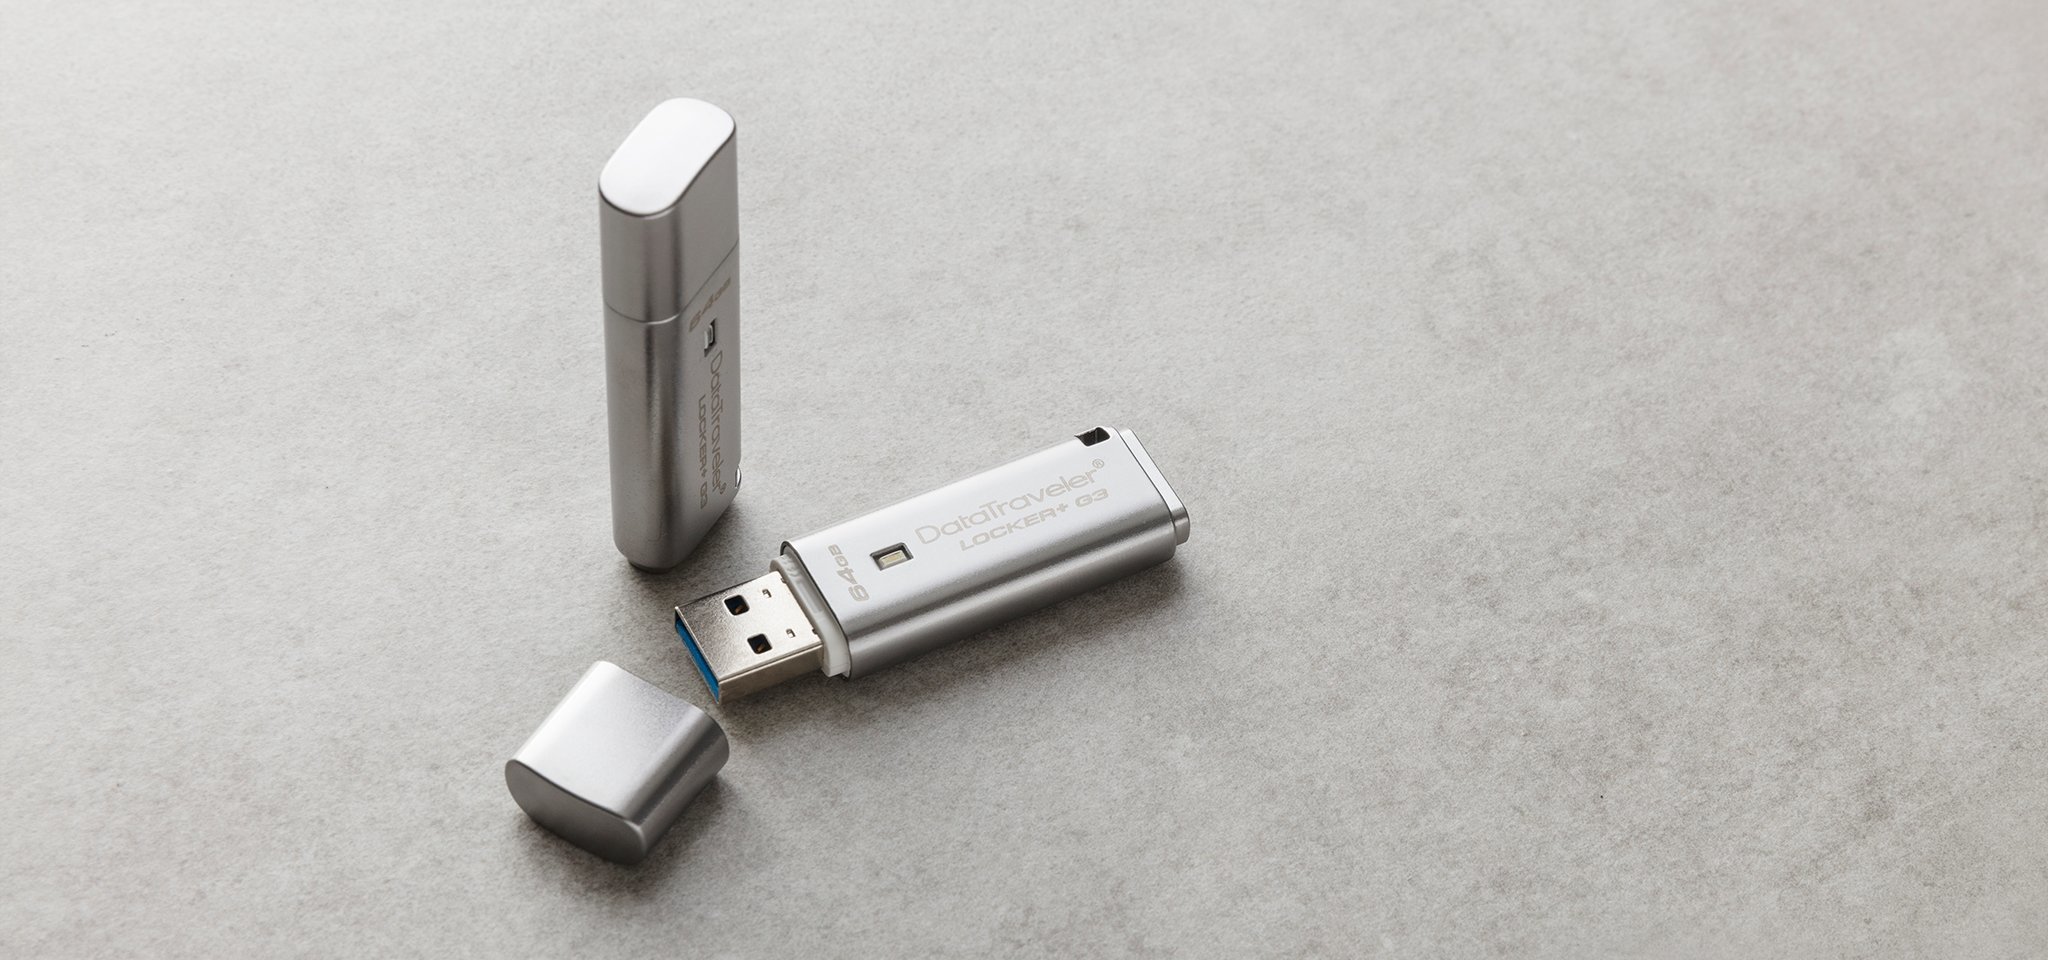 Pamięć Kingston 64GB DataTraveler Locker+ G3 (USB 3.0) 135MB/s DTLPG3/64GB szary widok od przodu na dwa produkty, jeden pendrive ze zdjętą osłoną portu